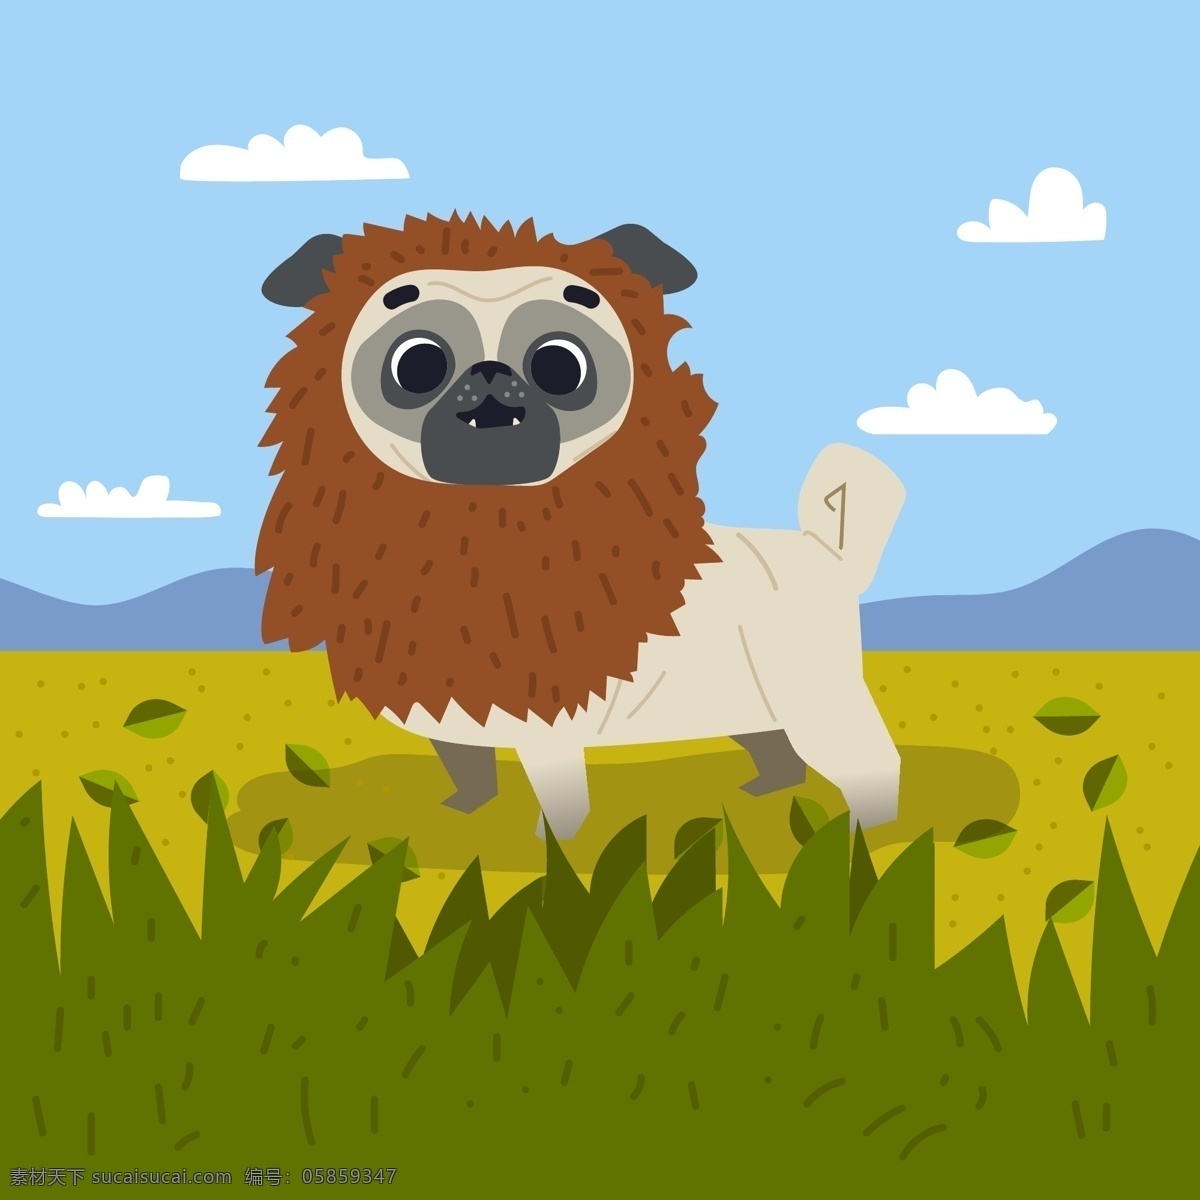 藏獒 动物 风景 搞笑 狗 卡通 可爱 可爱宠物 脸 手绘 的卡 通